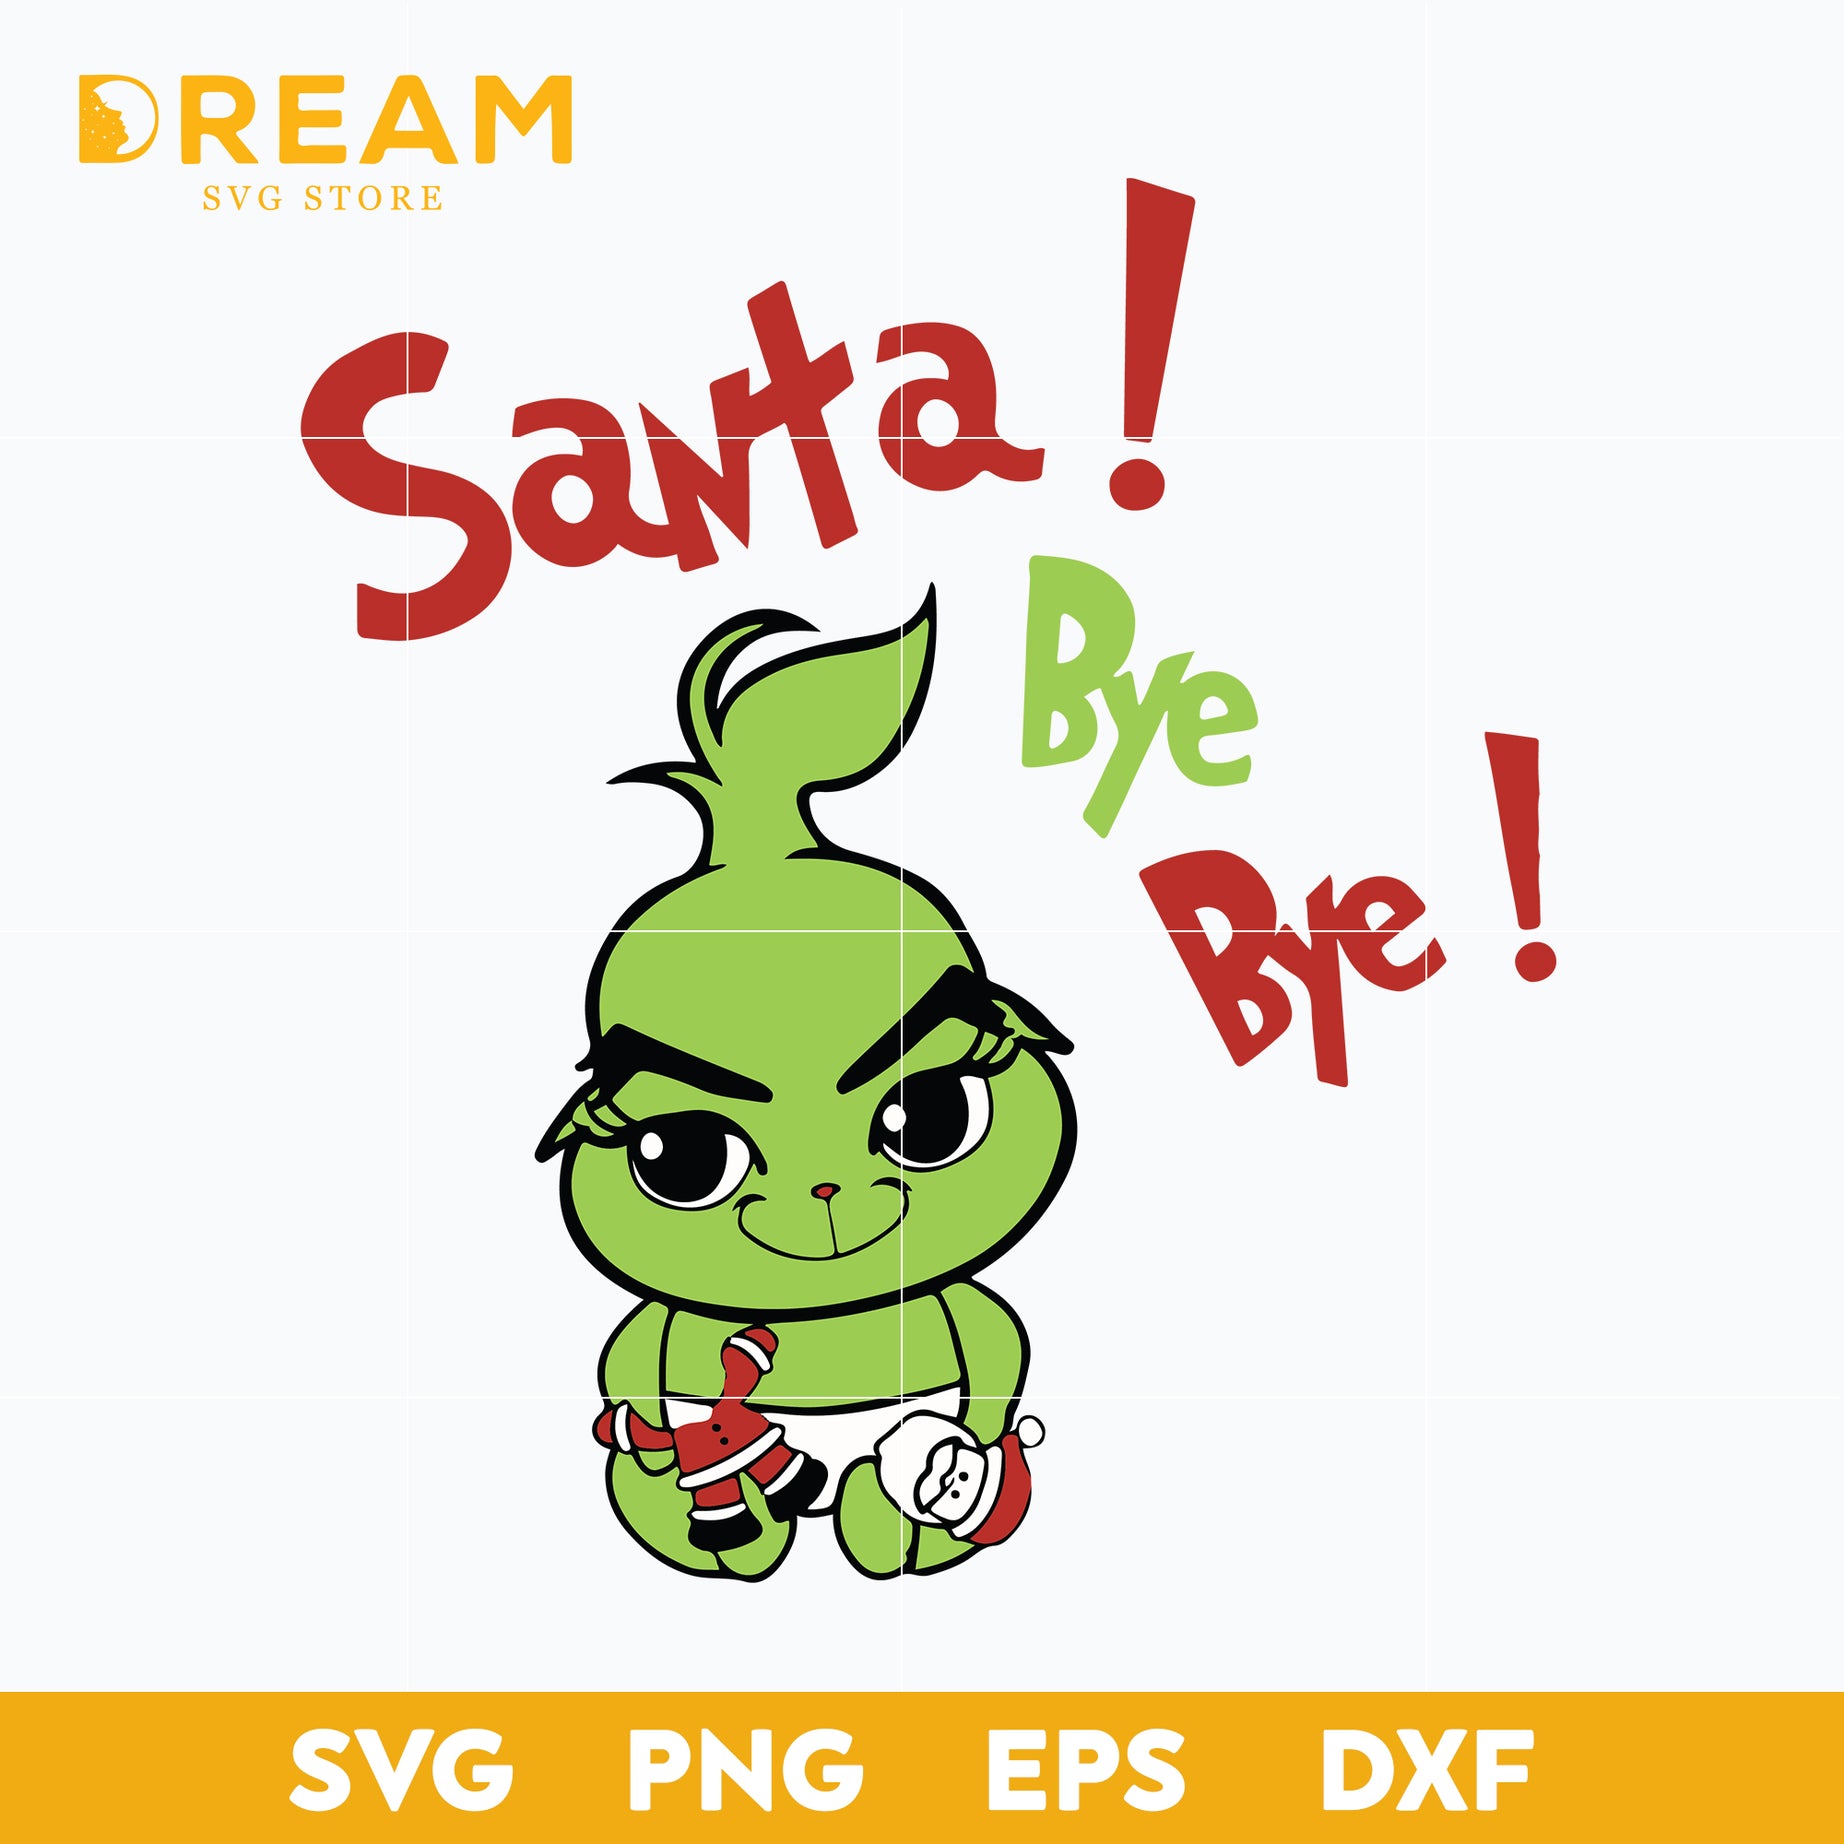 Santa bye bye christmas svg, baby grinch svg, grinch svg, Christmas svg, png, dxf, eps digital file CRM0312202L